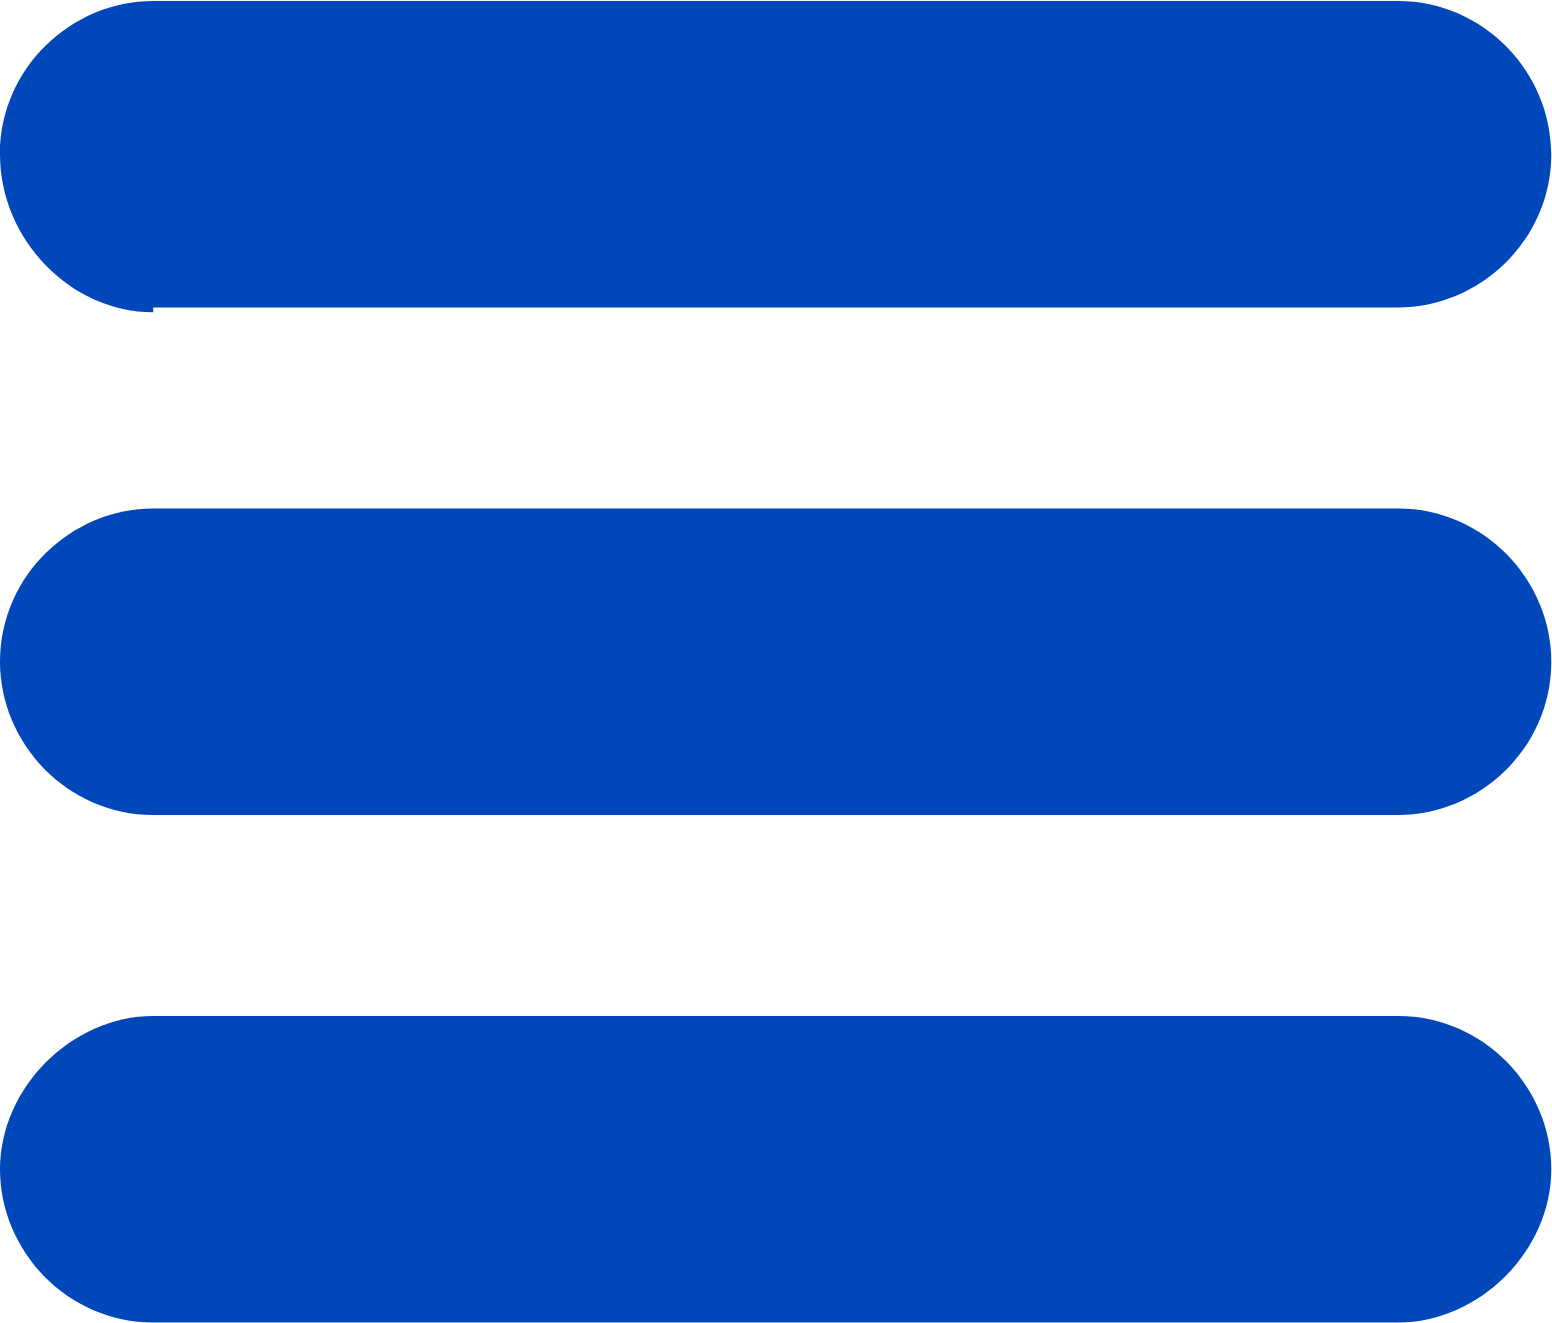 Galenica logo (transparent PNG)